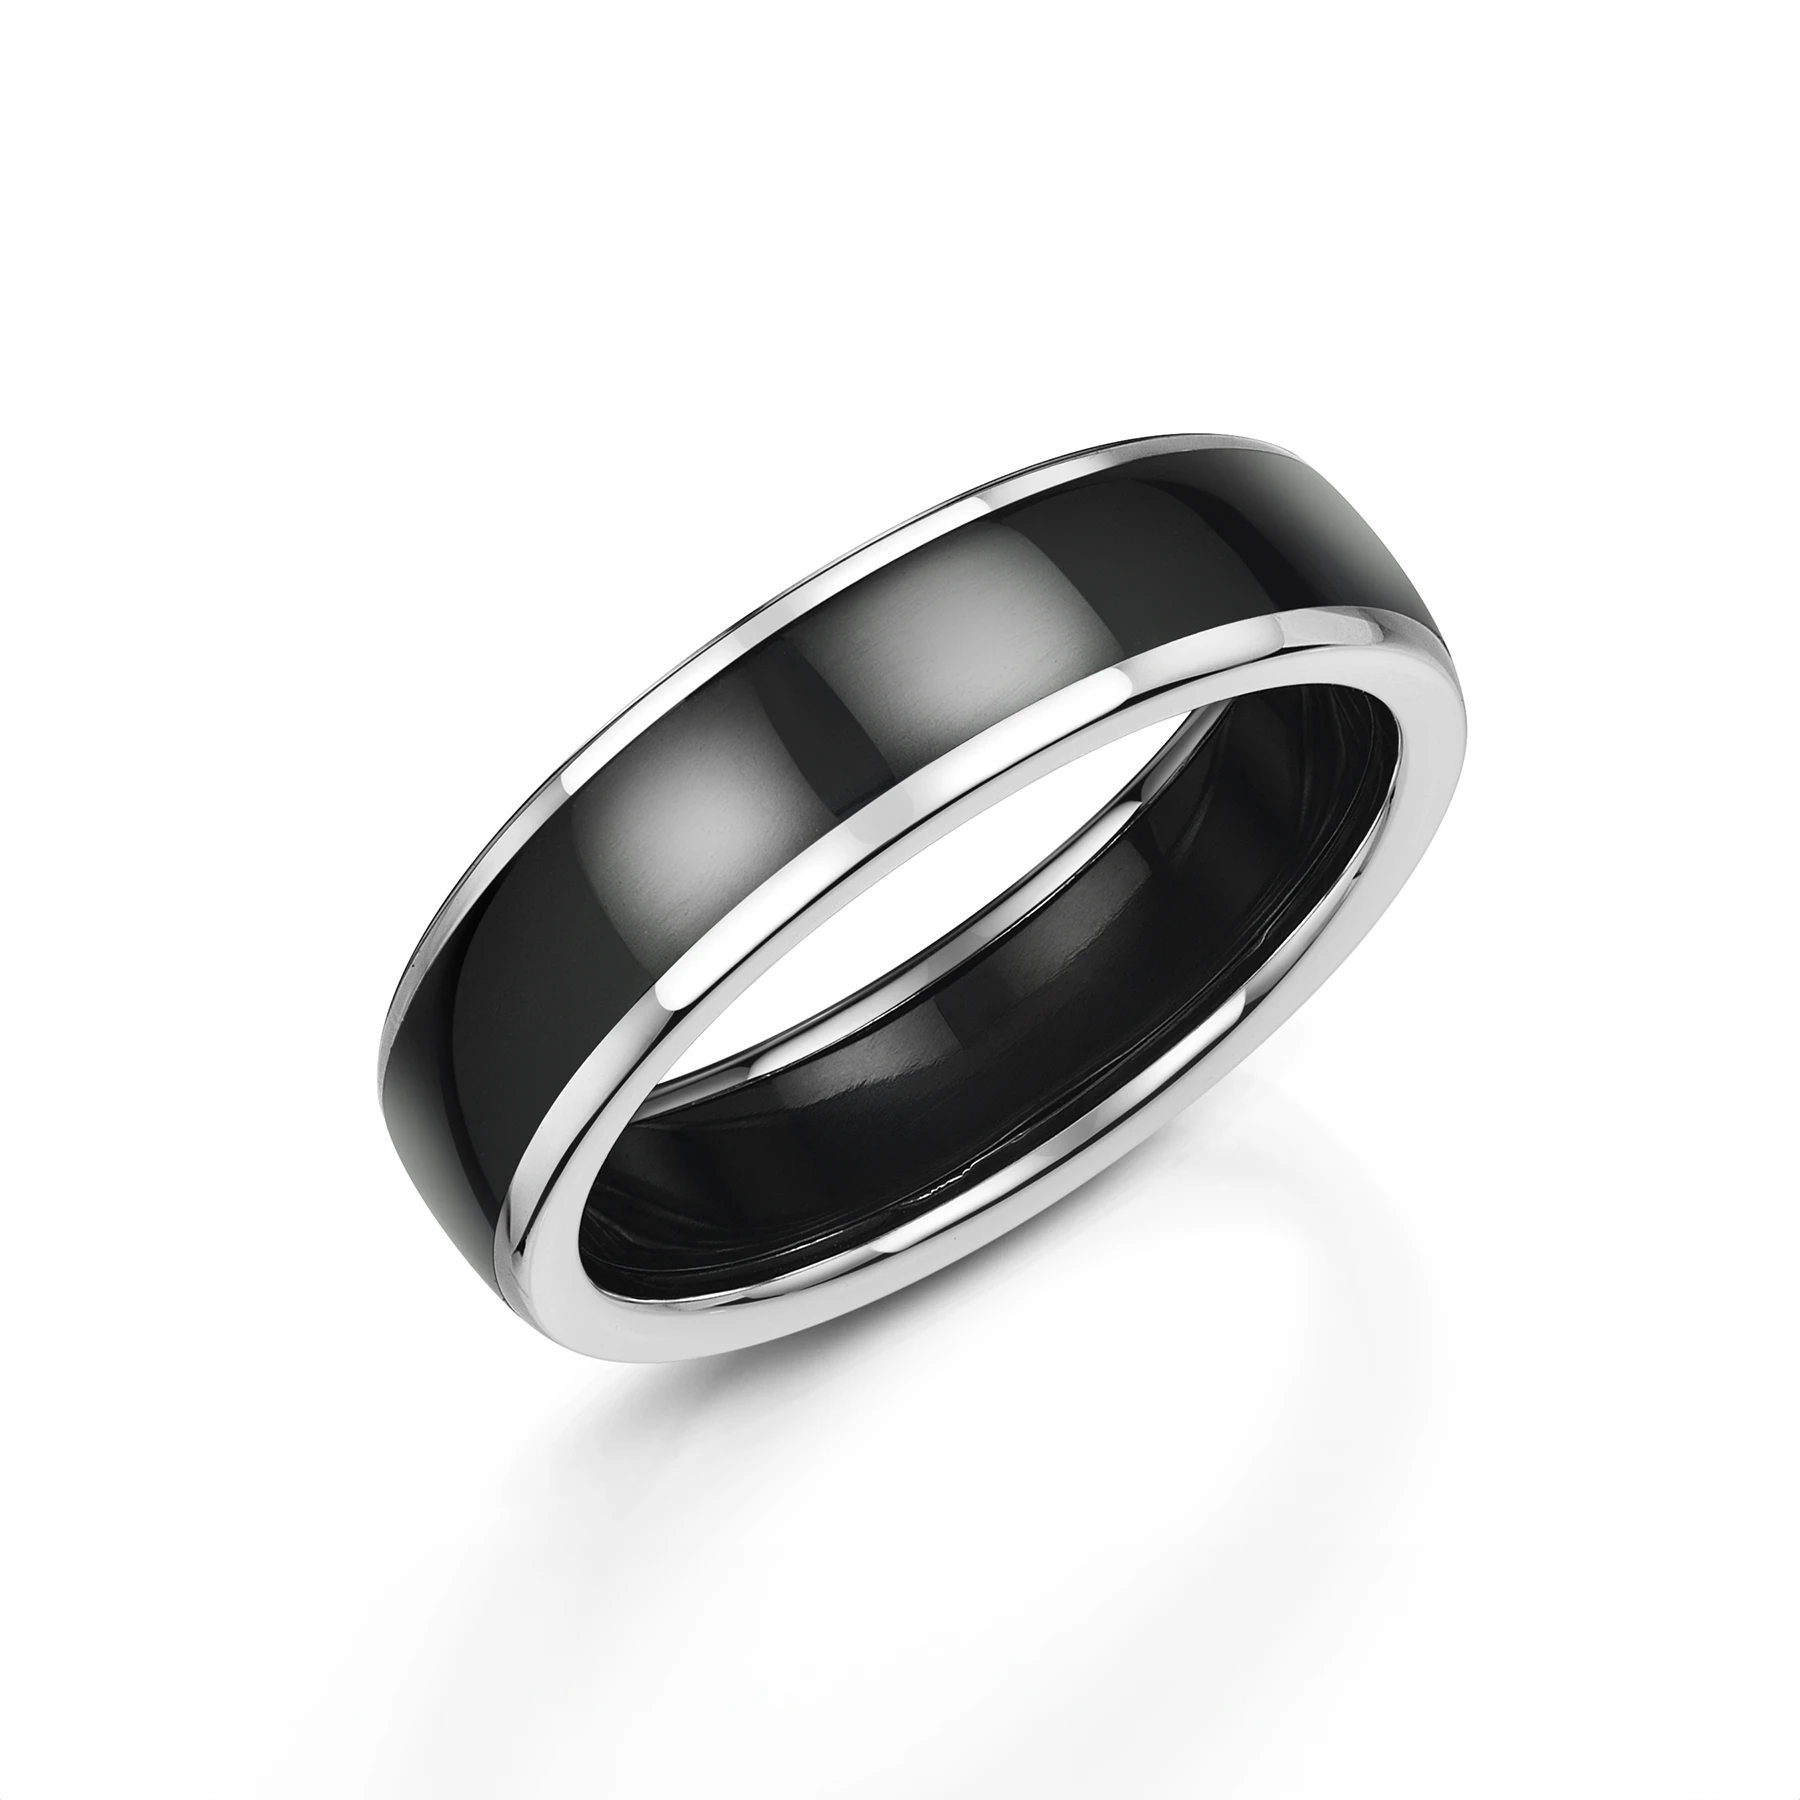 Polished Black Zirconium Wedding Ring with White Gold Edges